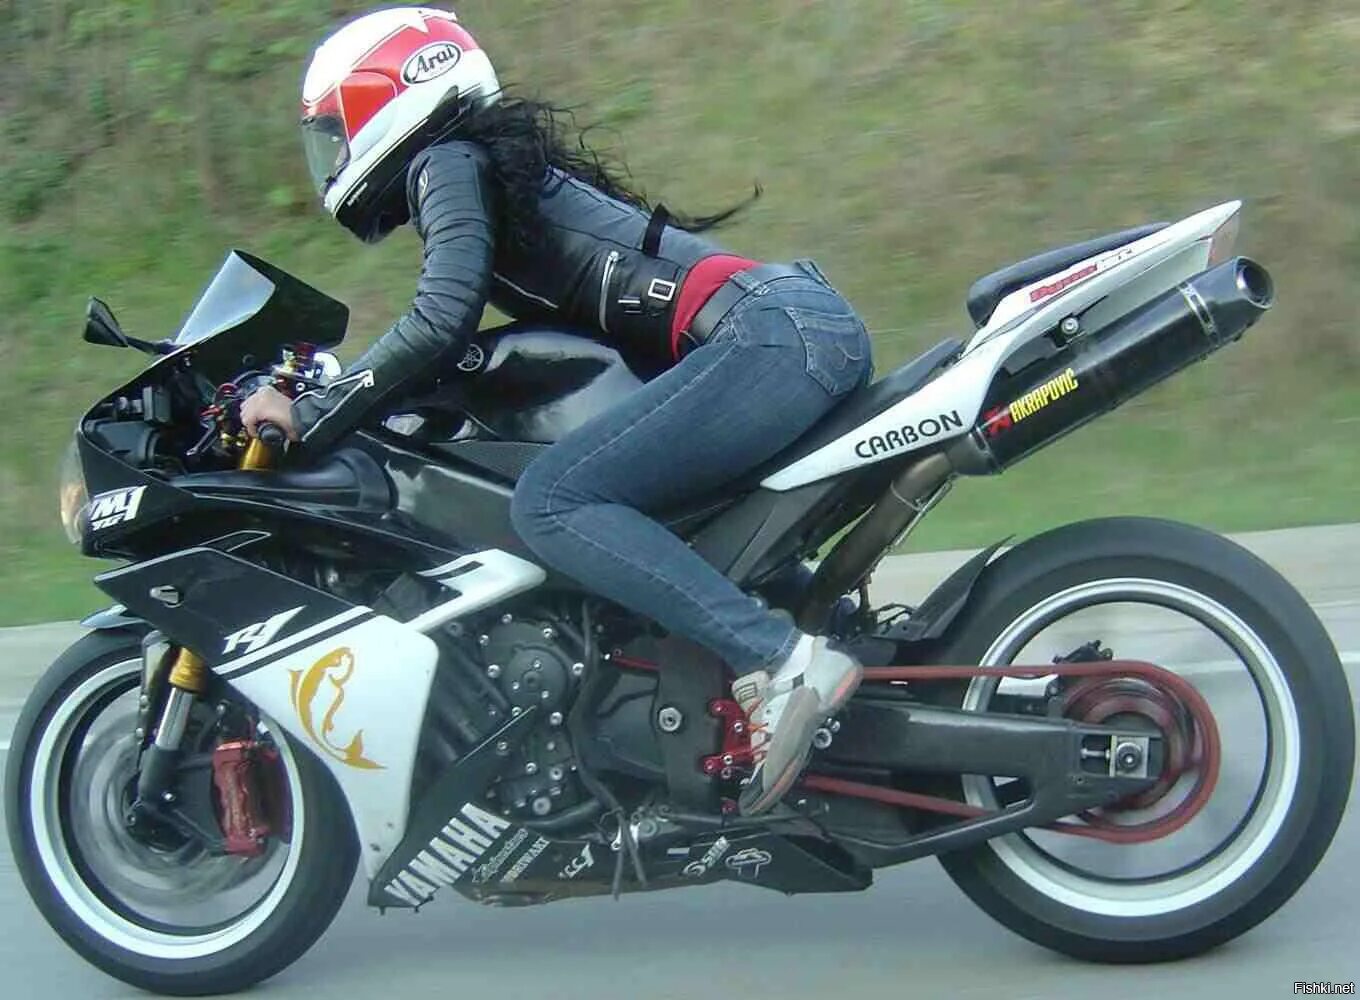 Девушка едет на мотоцикле. Девушка на мотоцикле в шлеме. Девушка на мотоцикле со спины. Красивые девушки на спортивных мотоциклах.